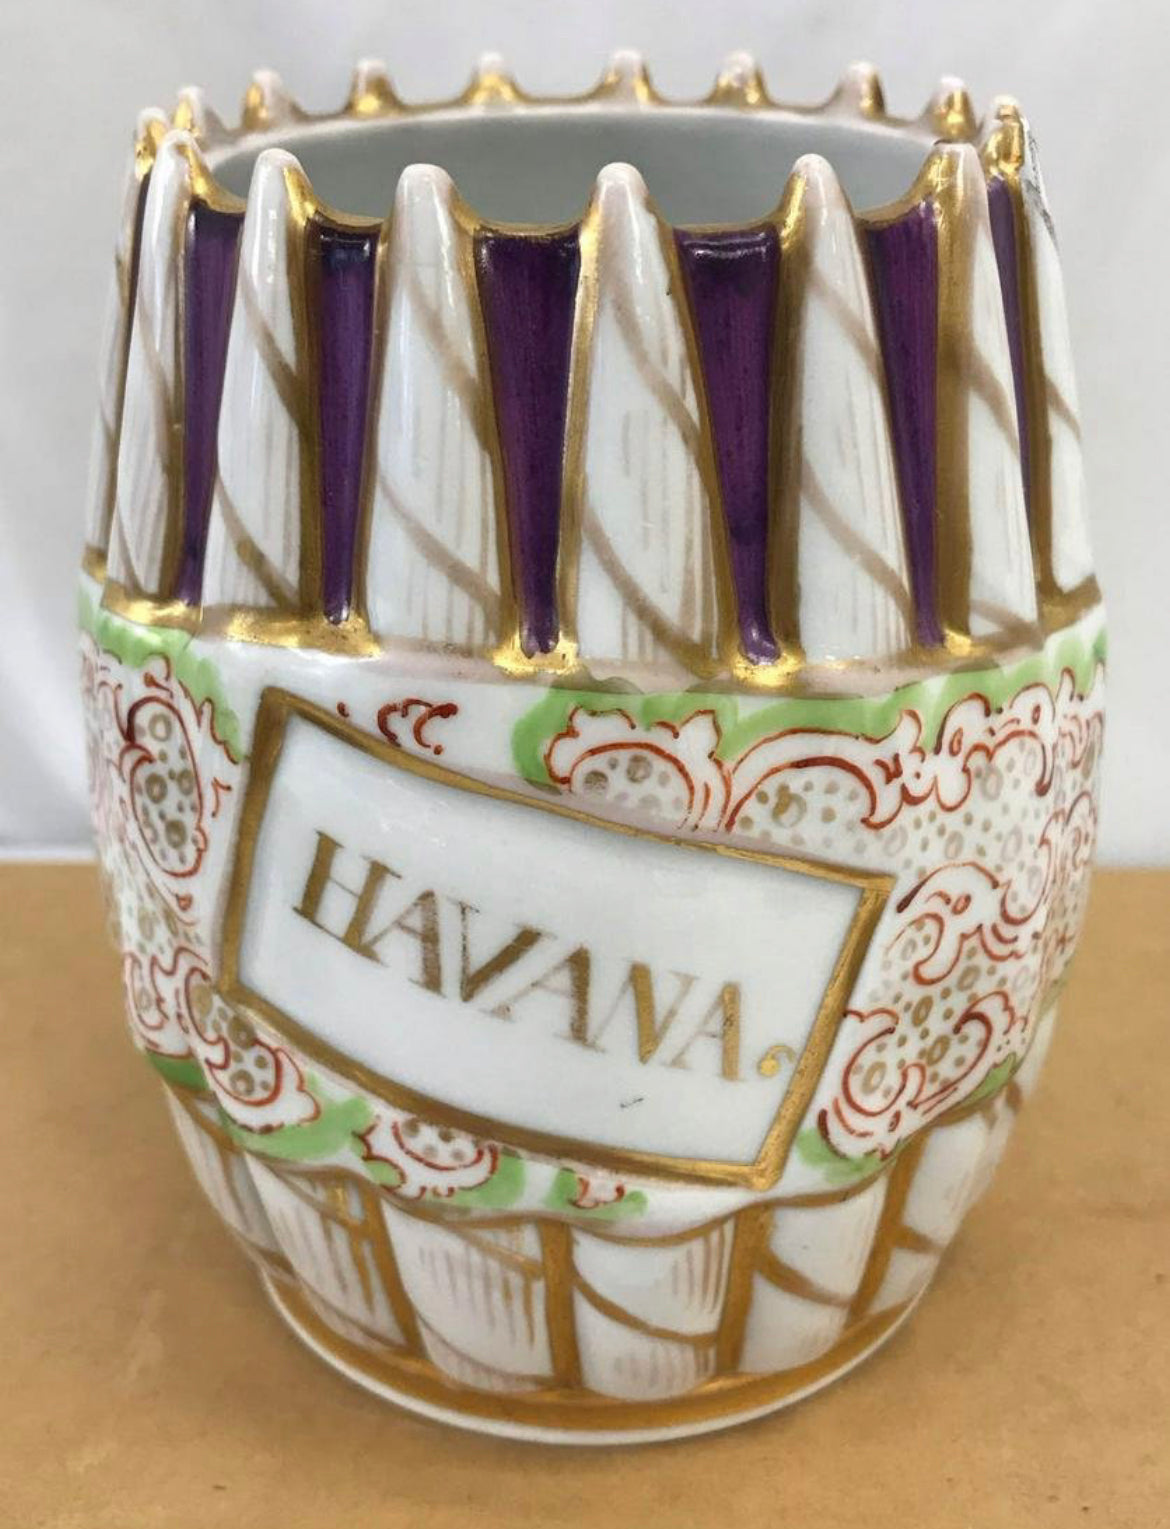 Early 1900s Porcelain Havana Cigar Jar